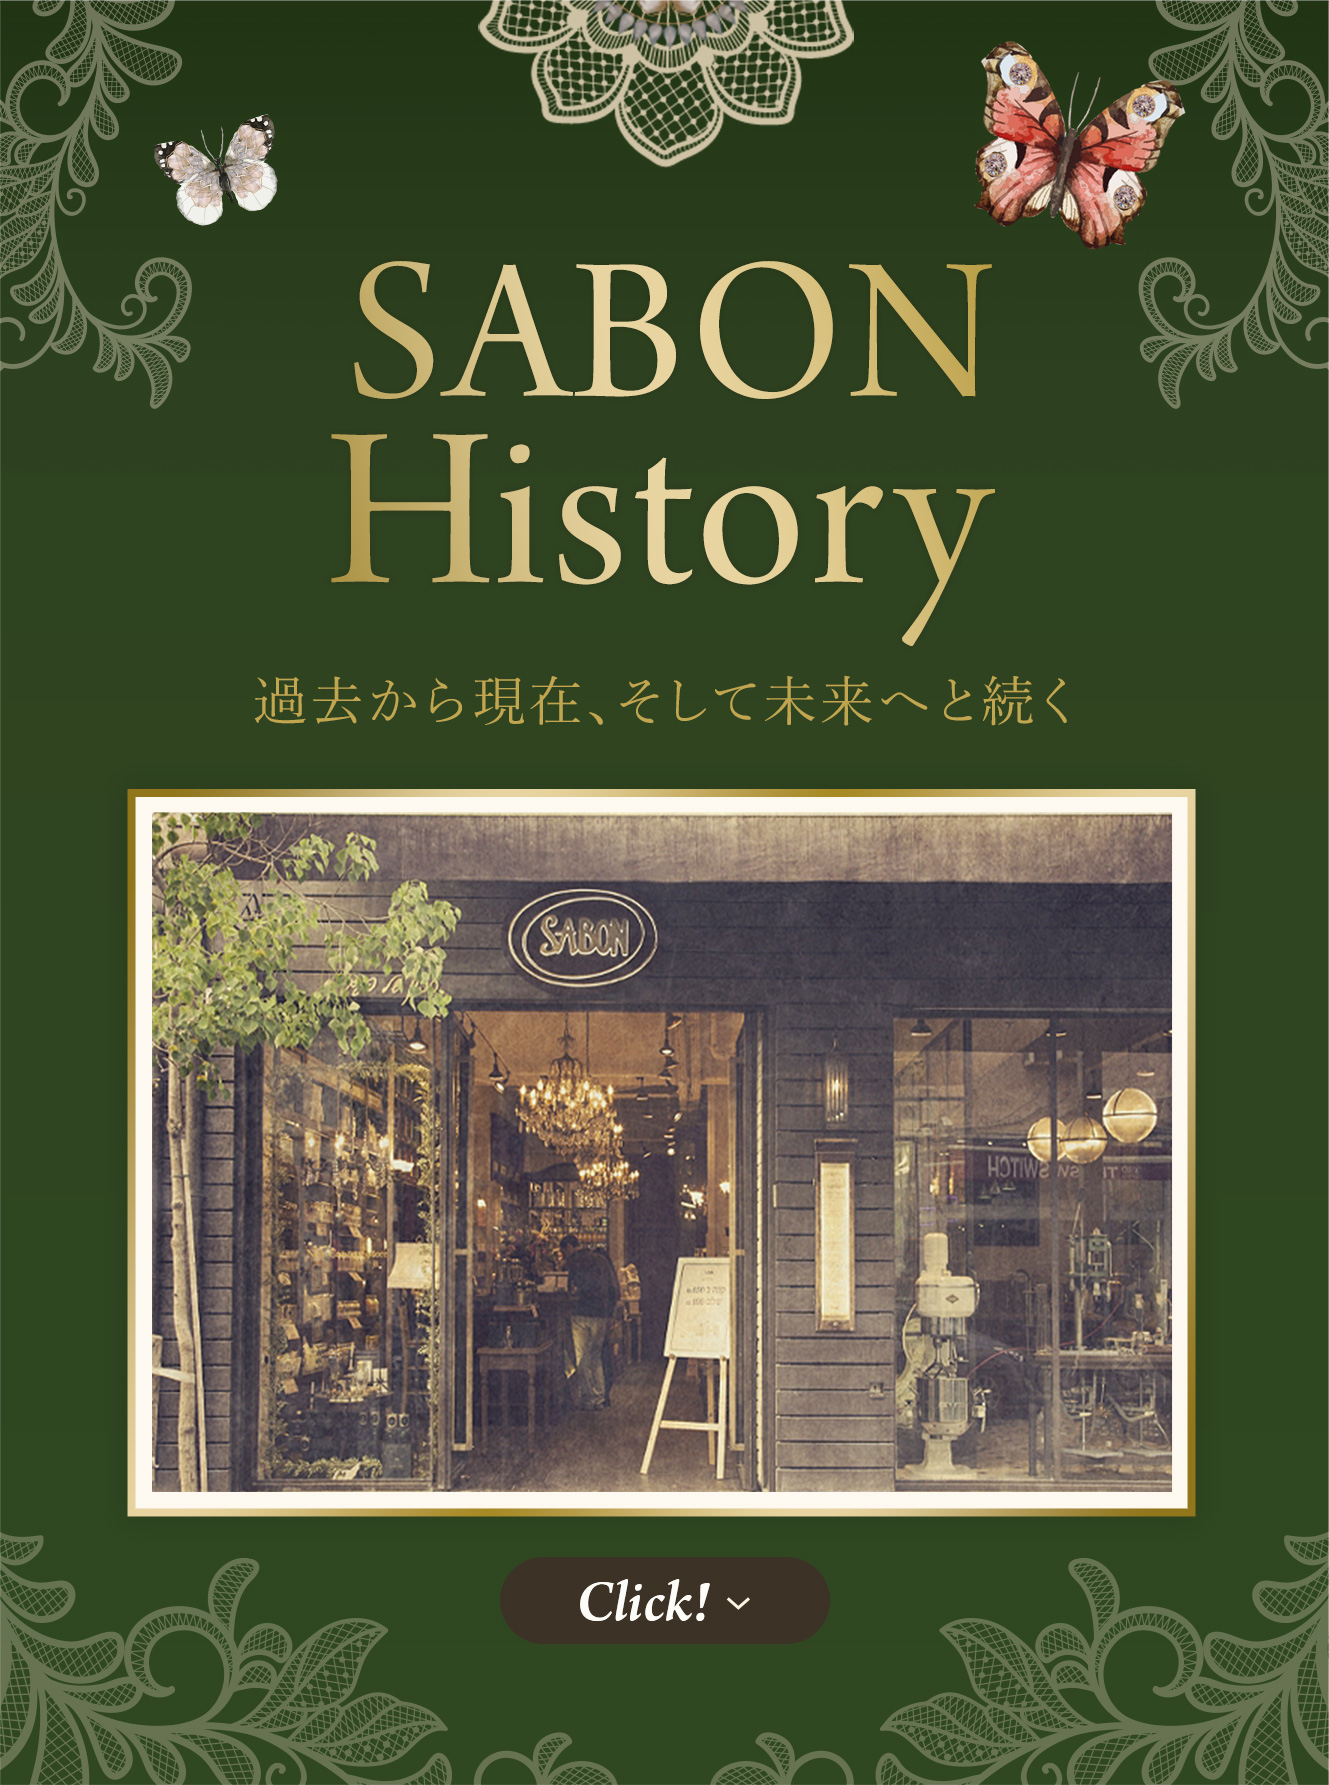 SABON History 過去から現在、そして未来へと続く Click!